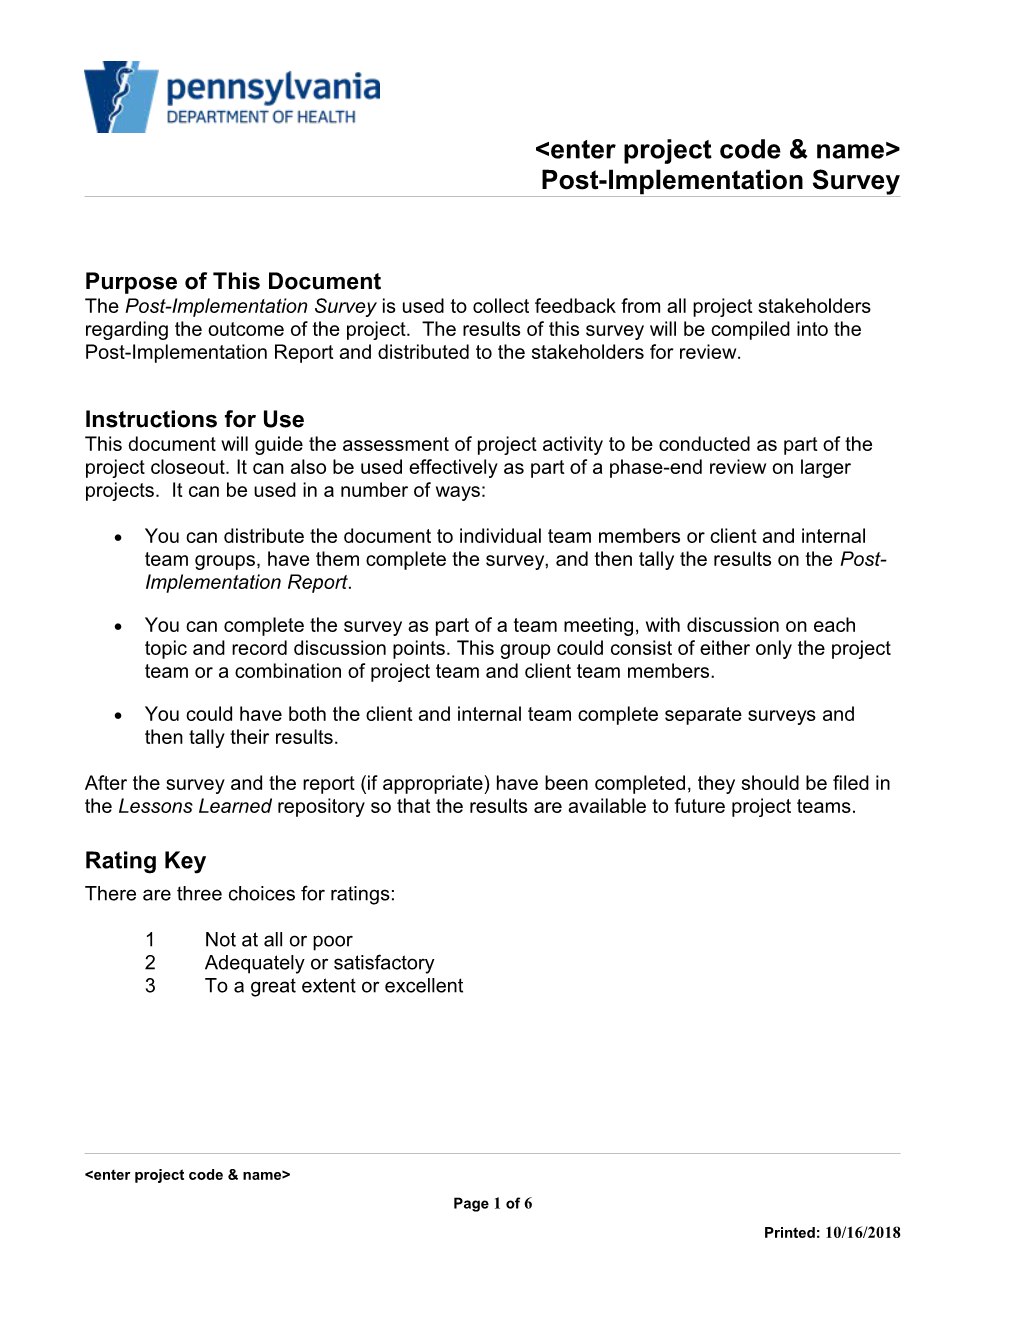 Post-Implementation Survey